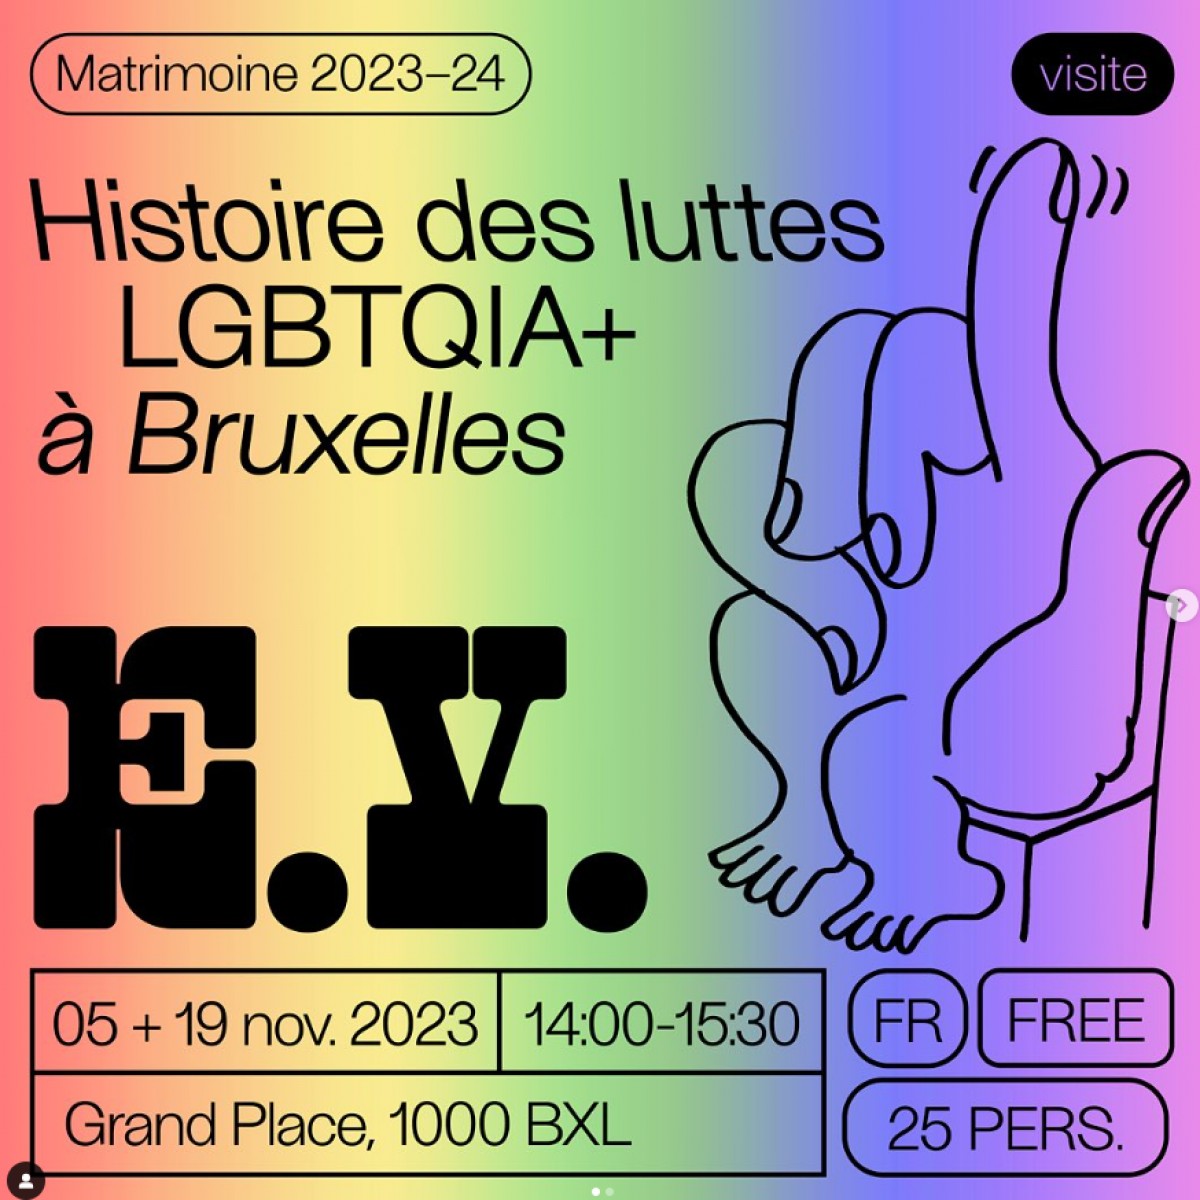 Bruxelles : Le matrimoine et la cause LGBT+ prennent vie !